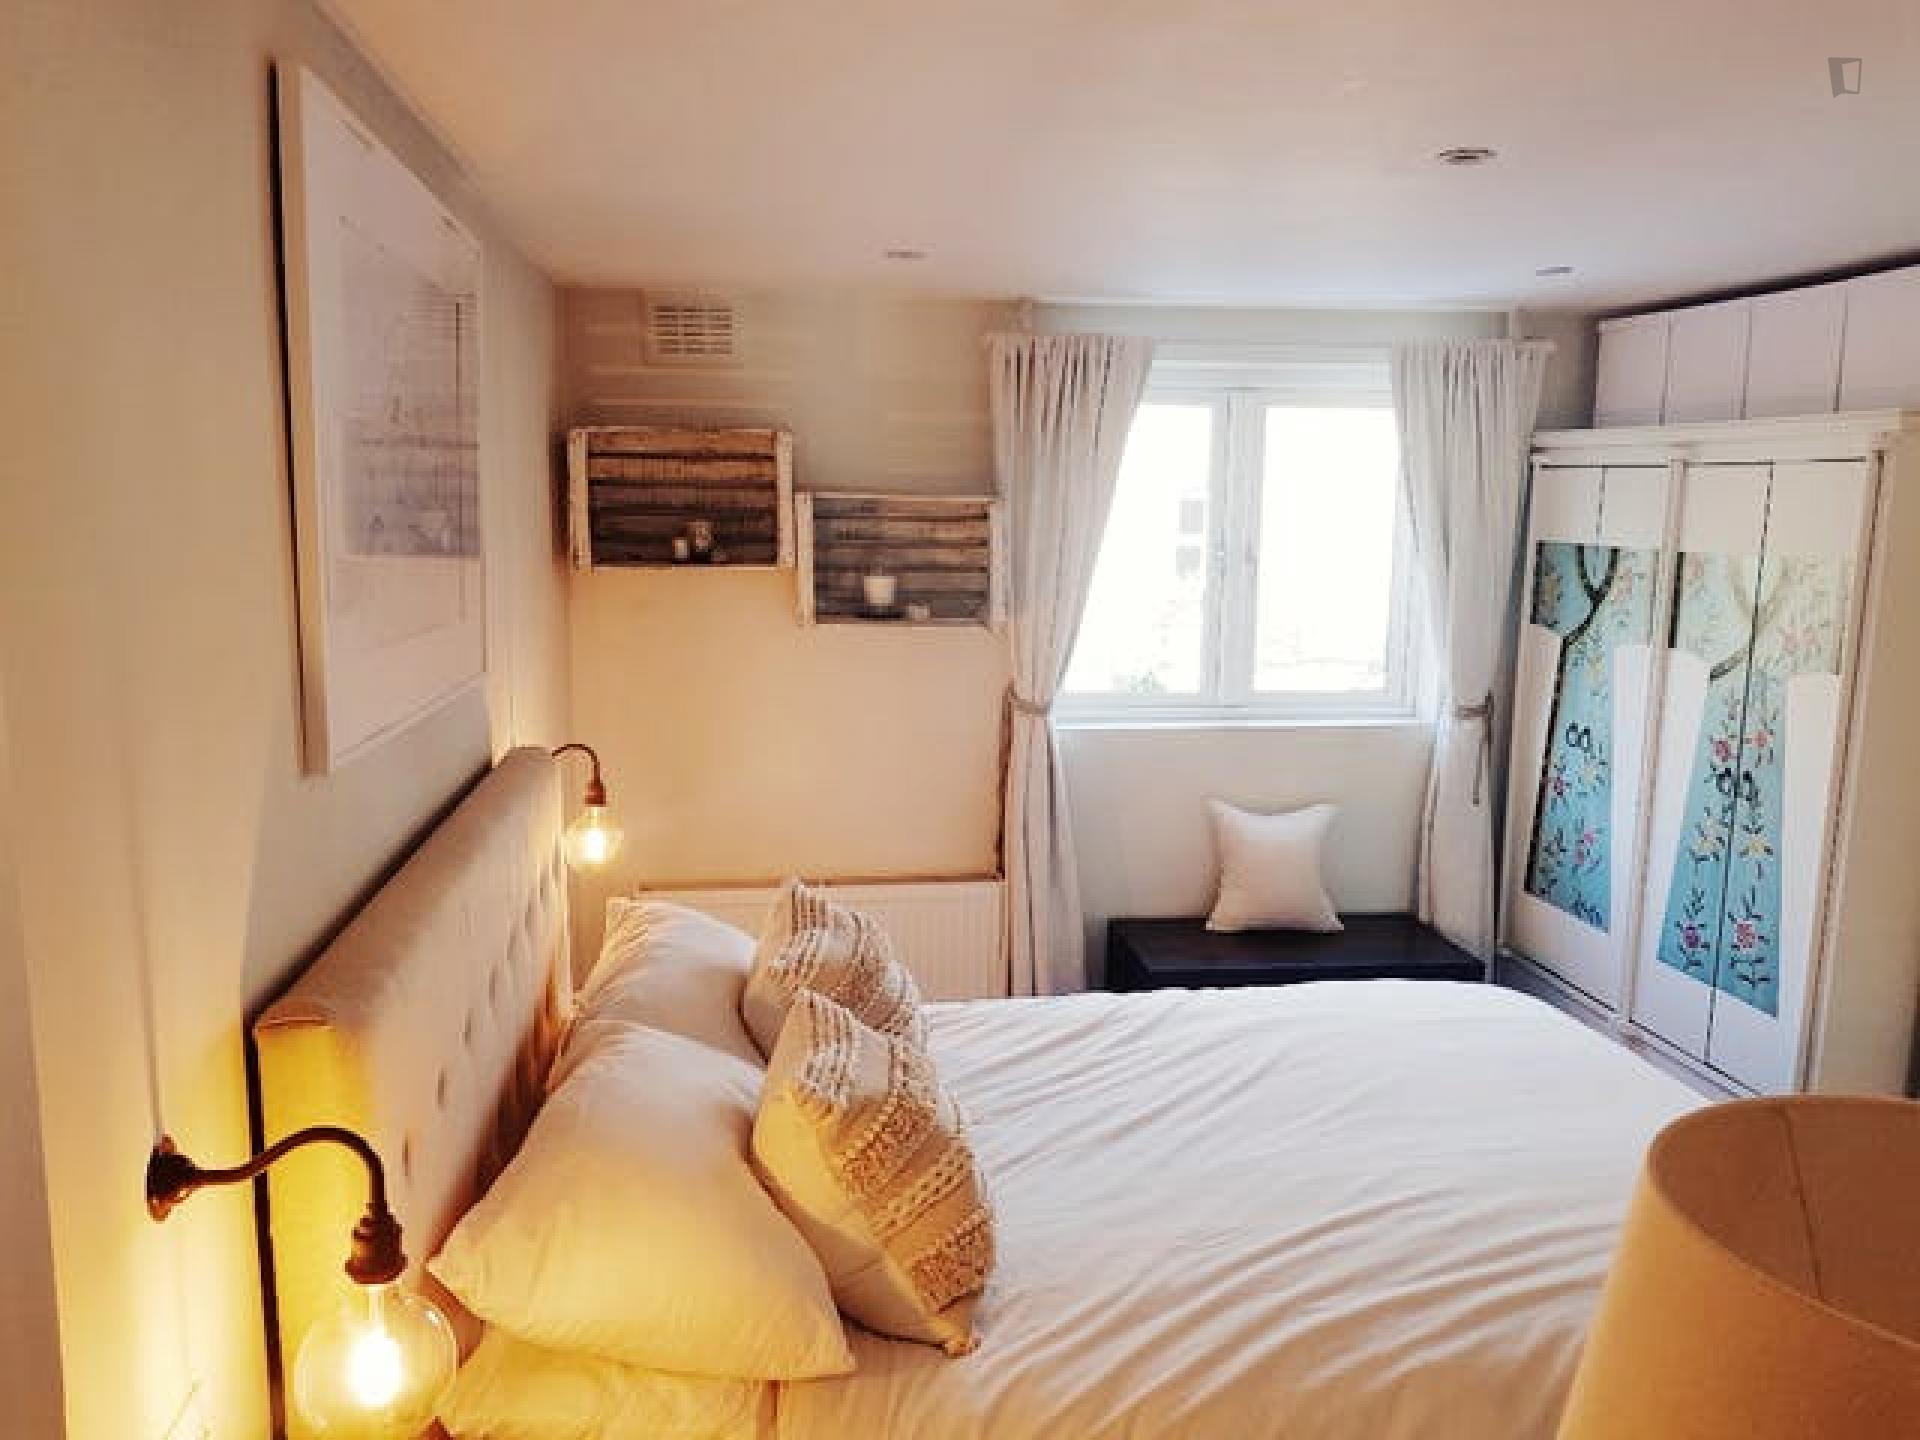 Kellett - Classy double bedroom in London